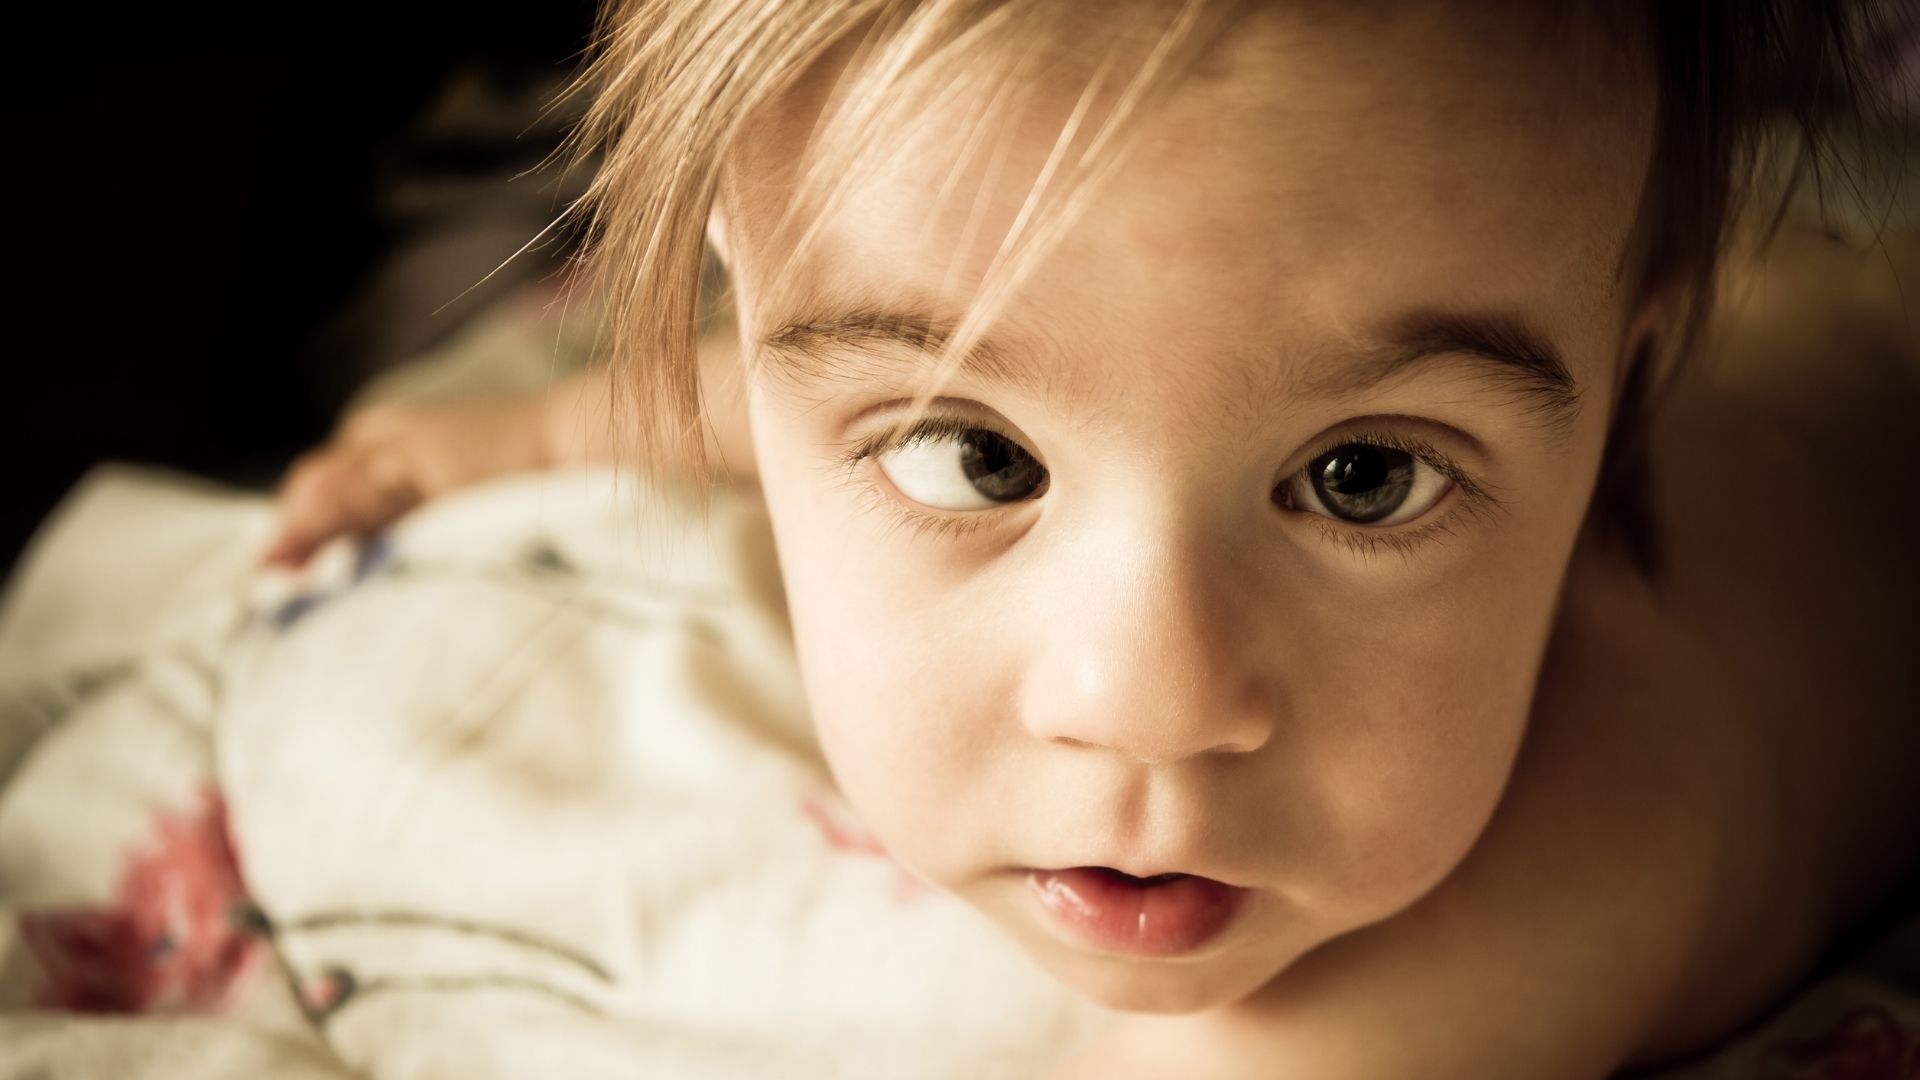 Bài tập nào có thể được áp dụng để chữa mắt lác ở trẻ em tại nhà?
